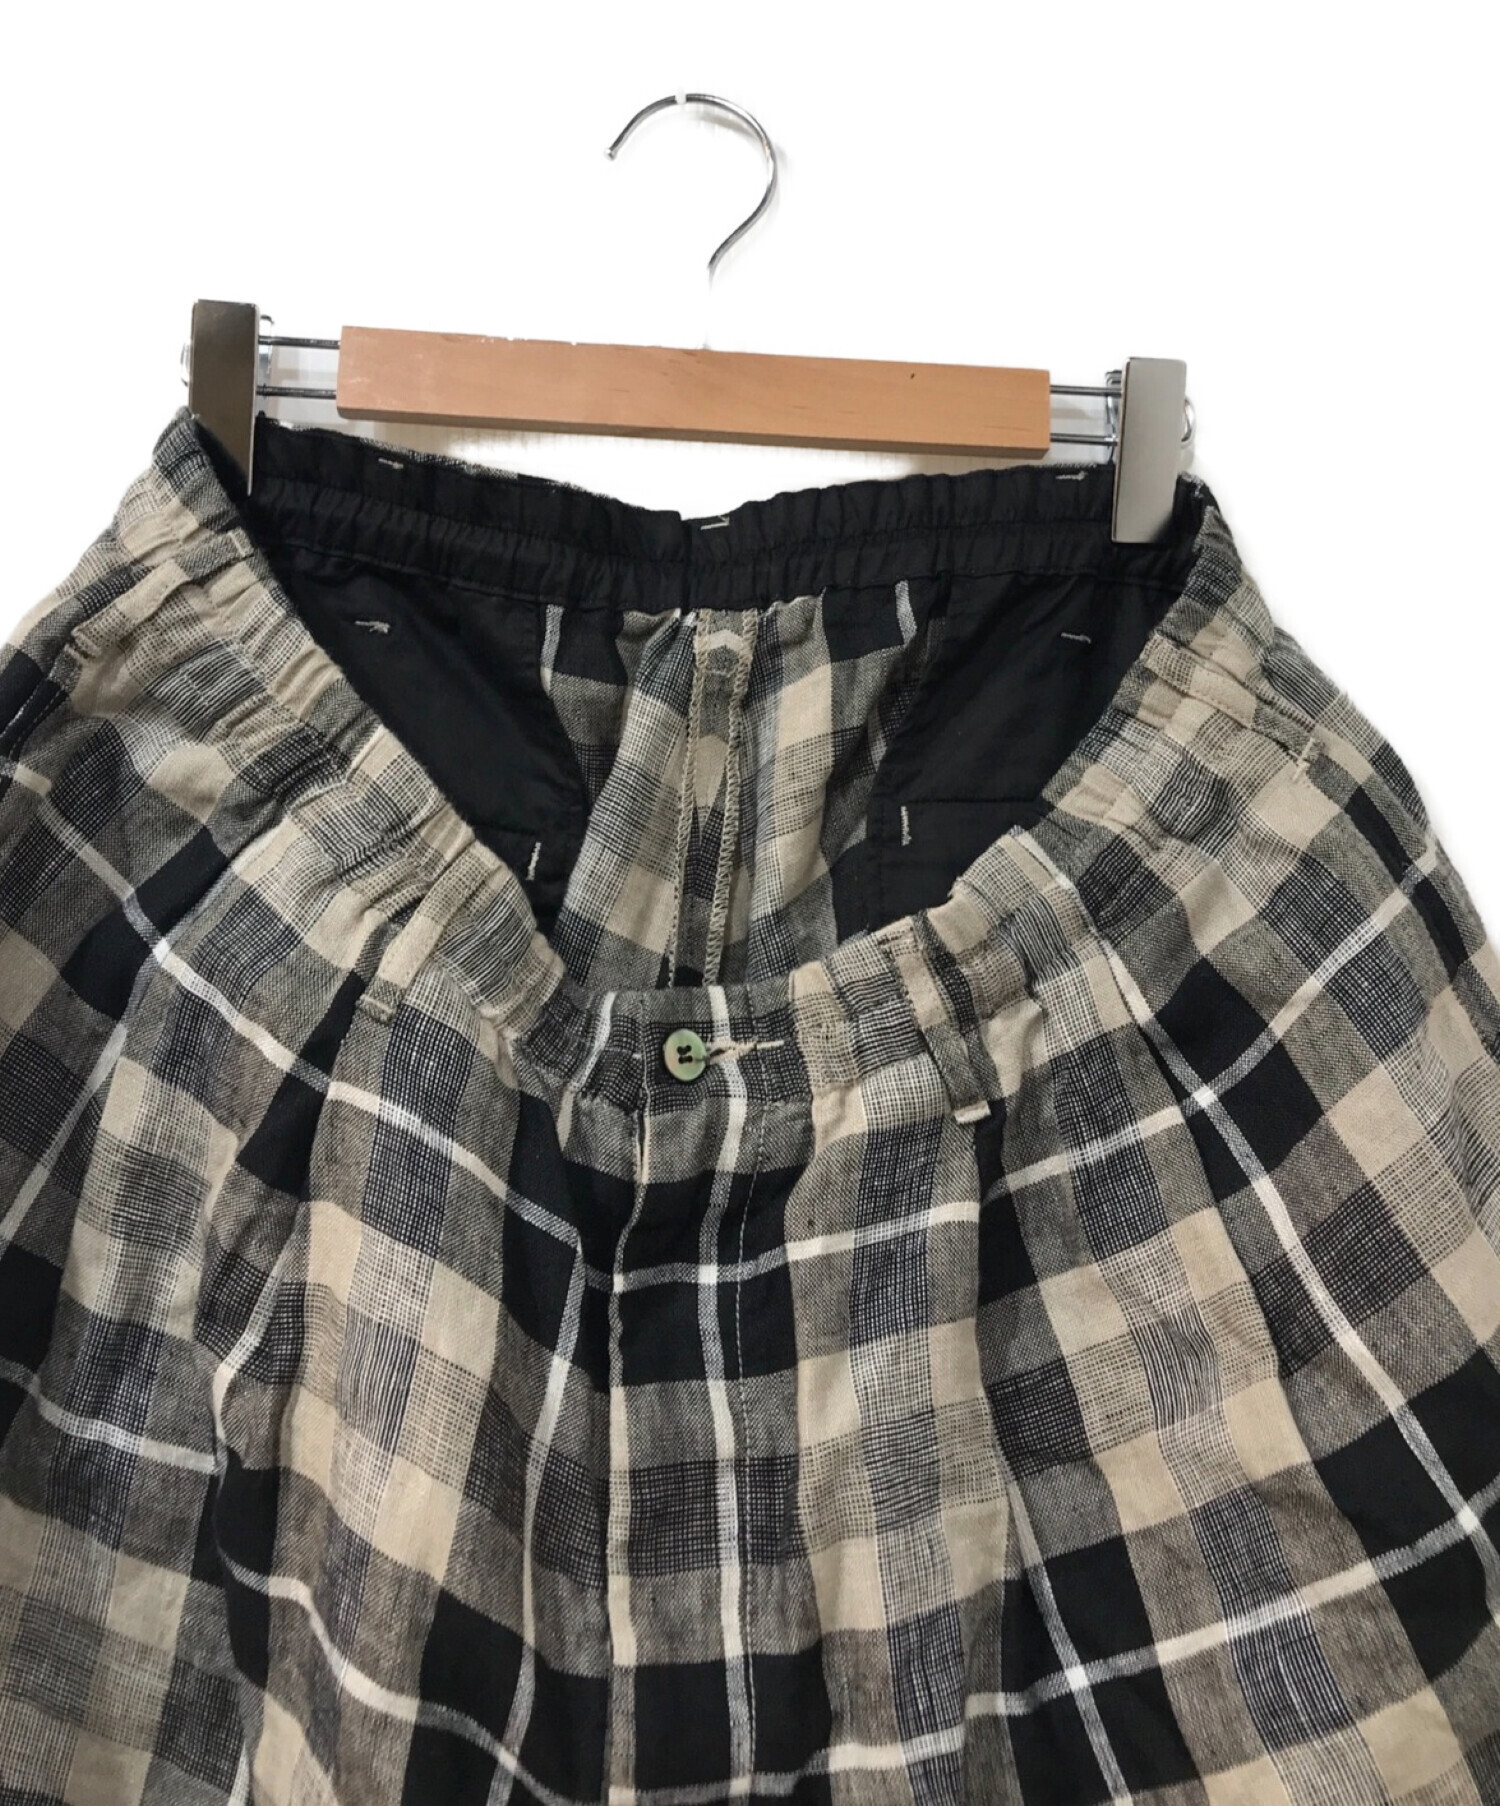 COOTIE PRODUCTIONS (クーティープロダクションズ) Linen Check 2 Tuck Easy Pants ベージュ×ブラック  サイズ: XL